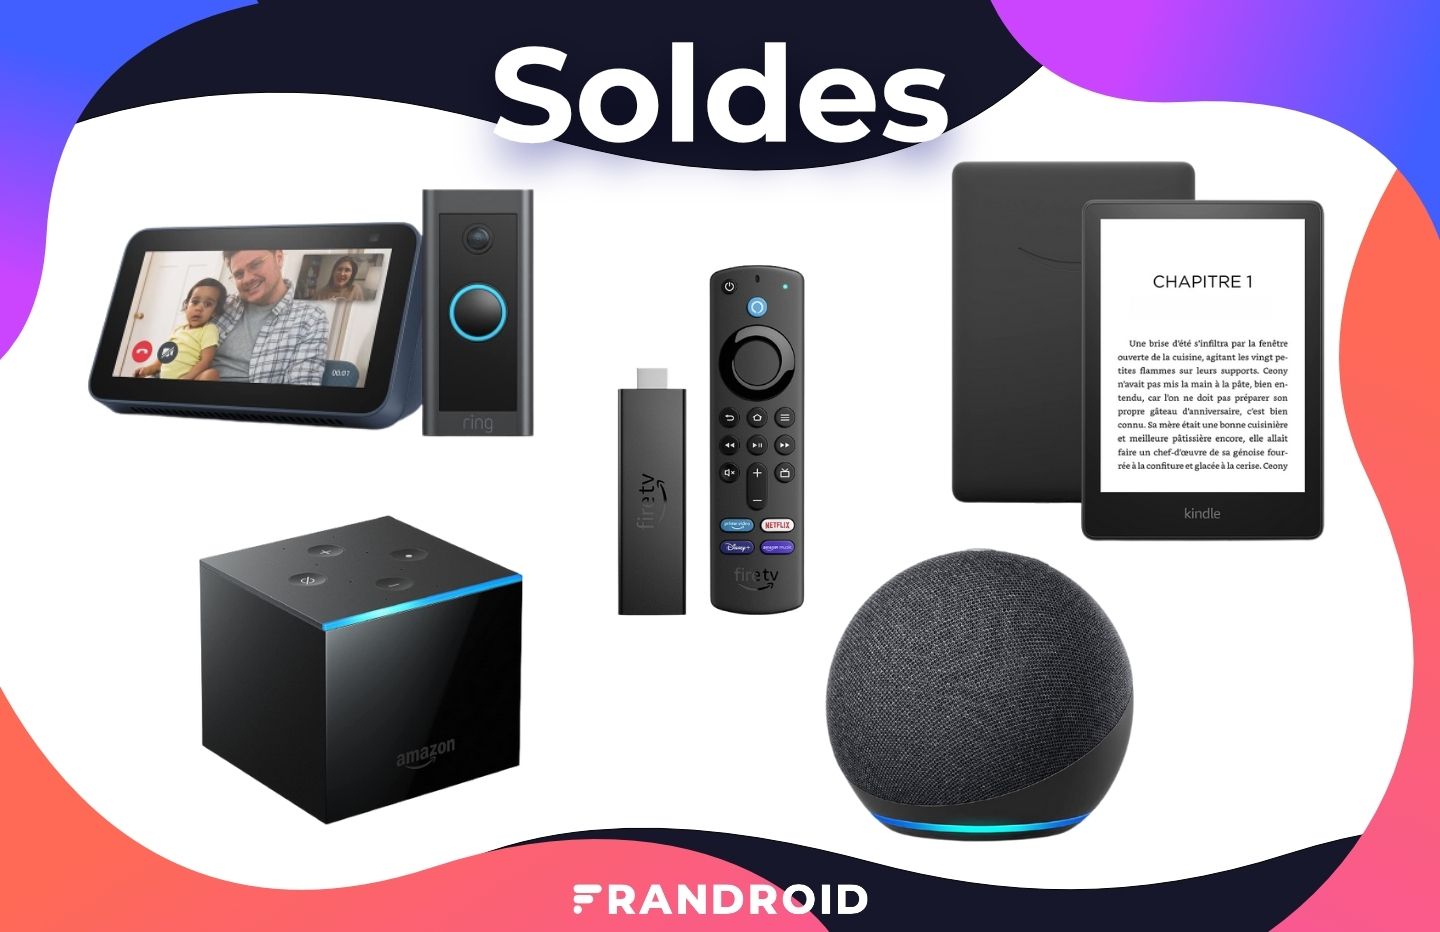 Amazon : les produits Kindle, Echo et Fire TV sont très bien soldés actuellement